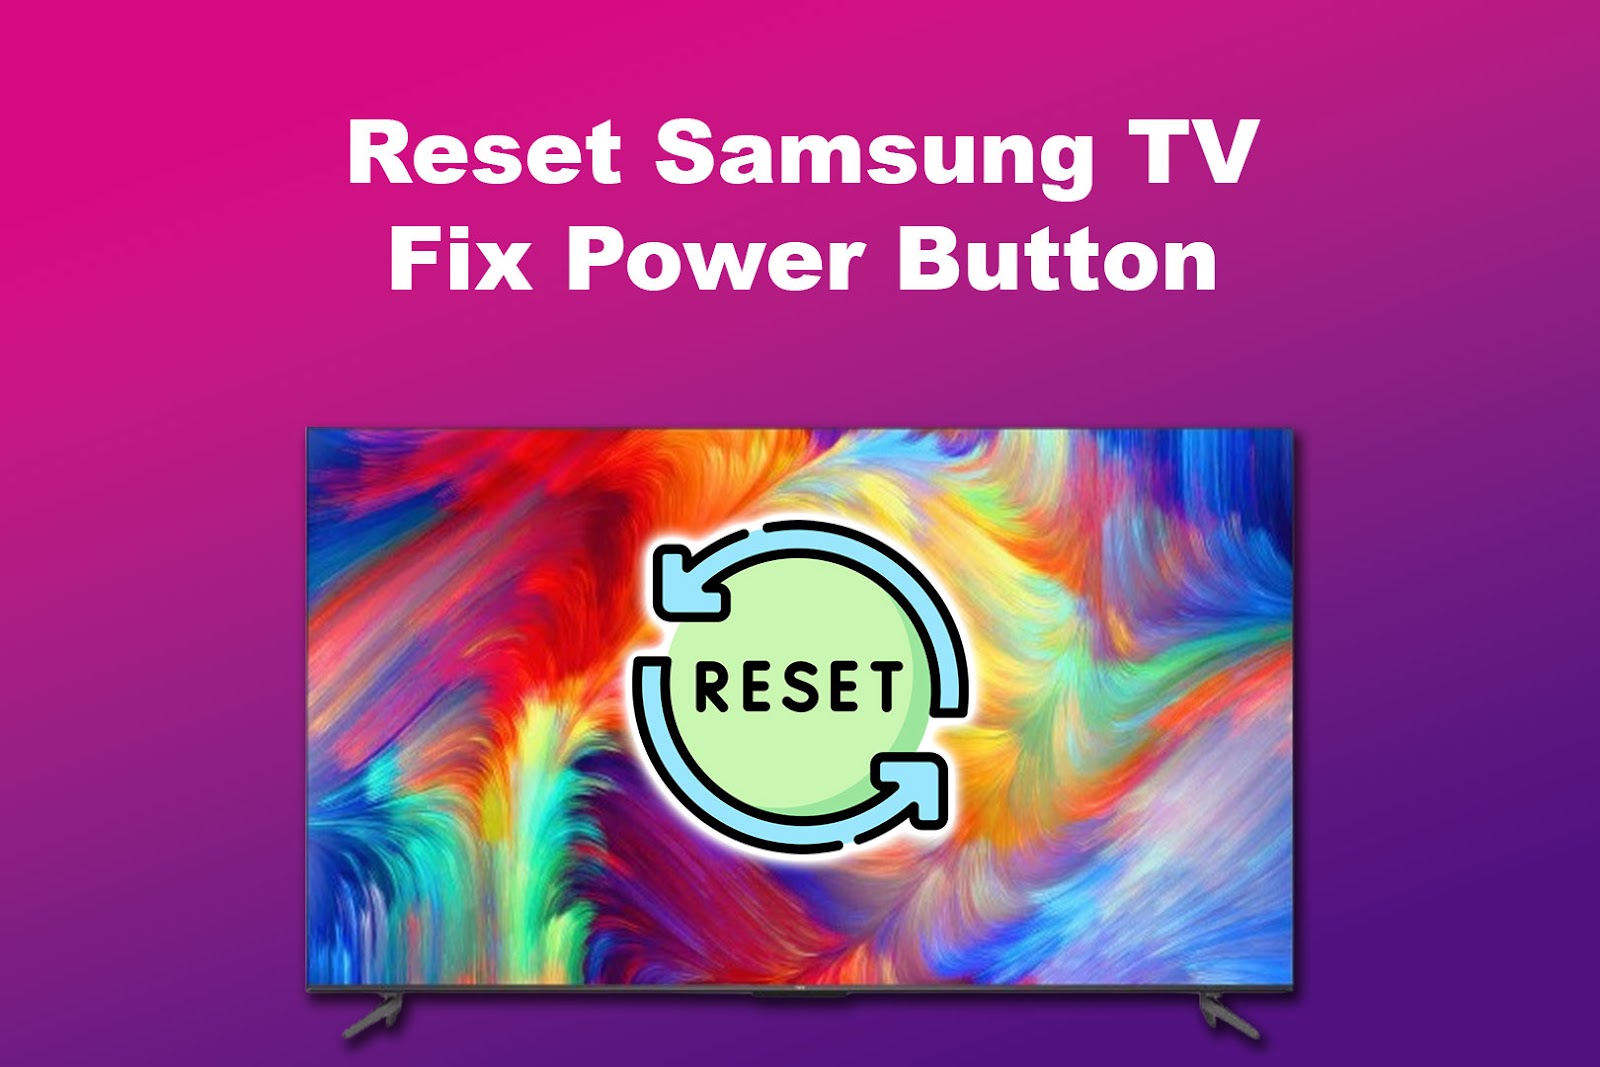 Reset Samsung TV Fix Power Button